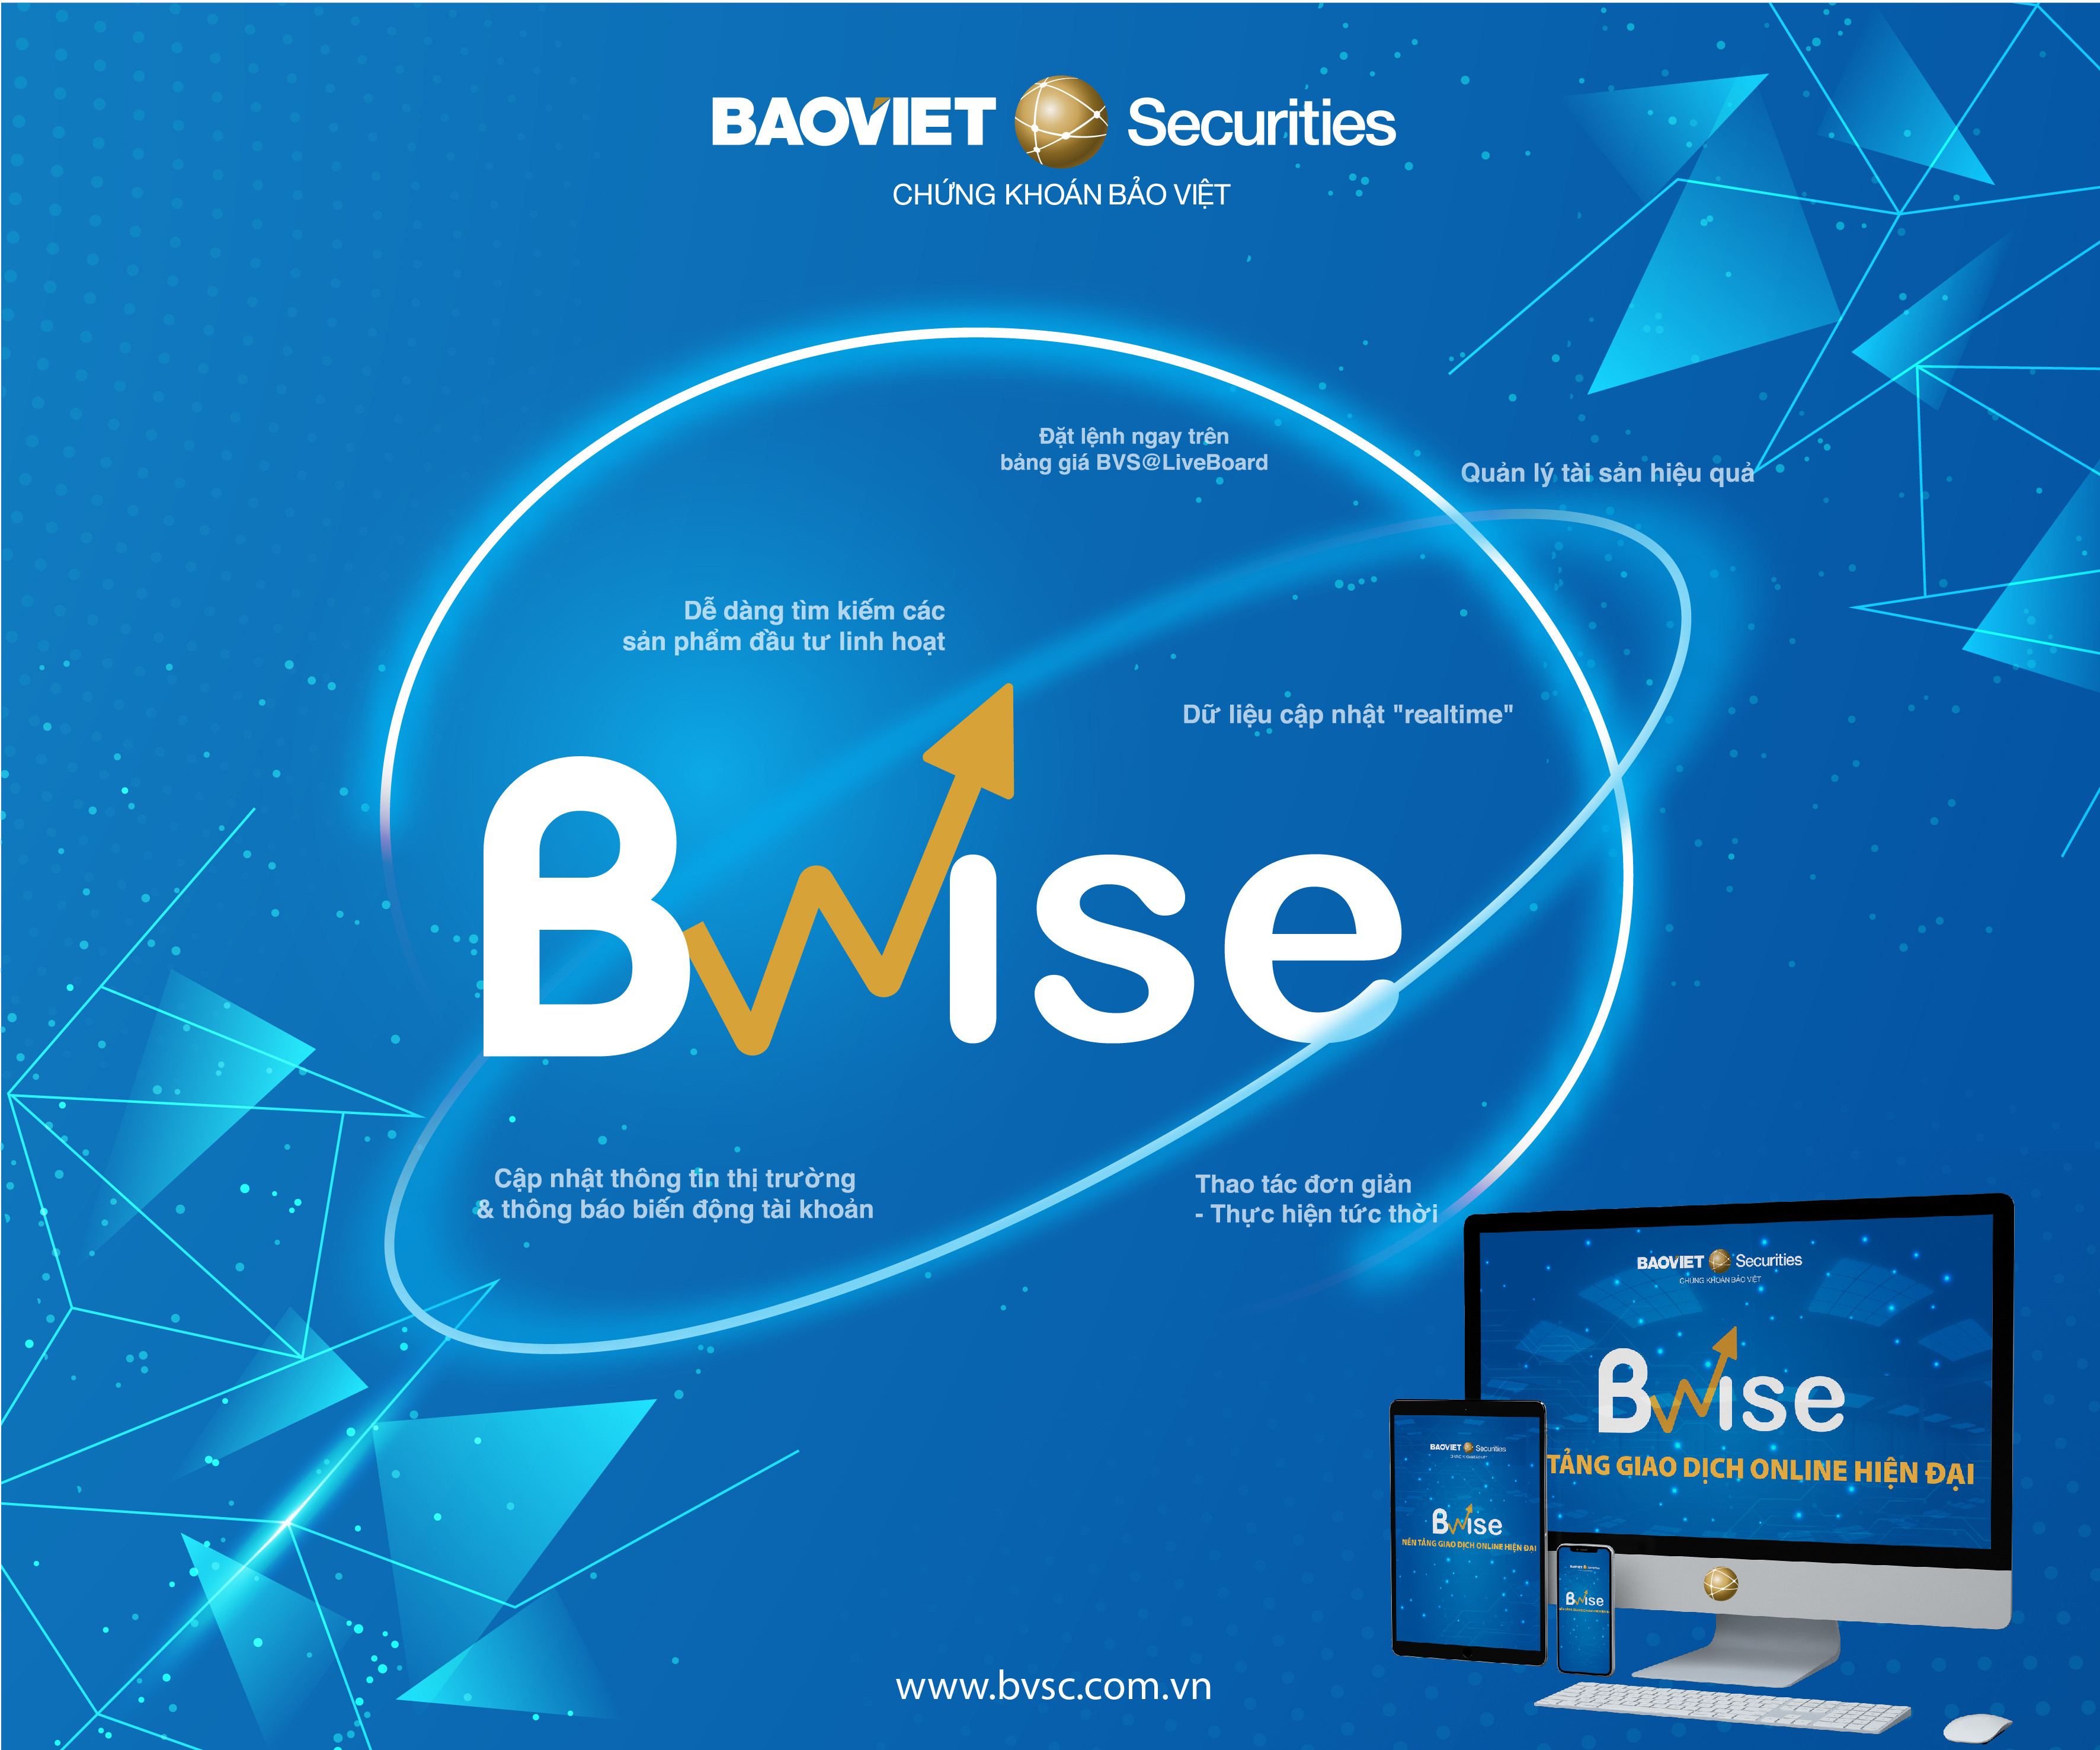 b-wise-bao-viet-securities